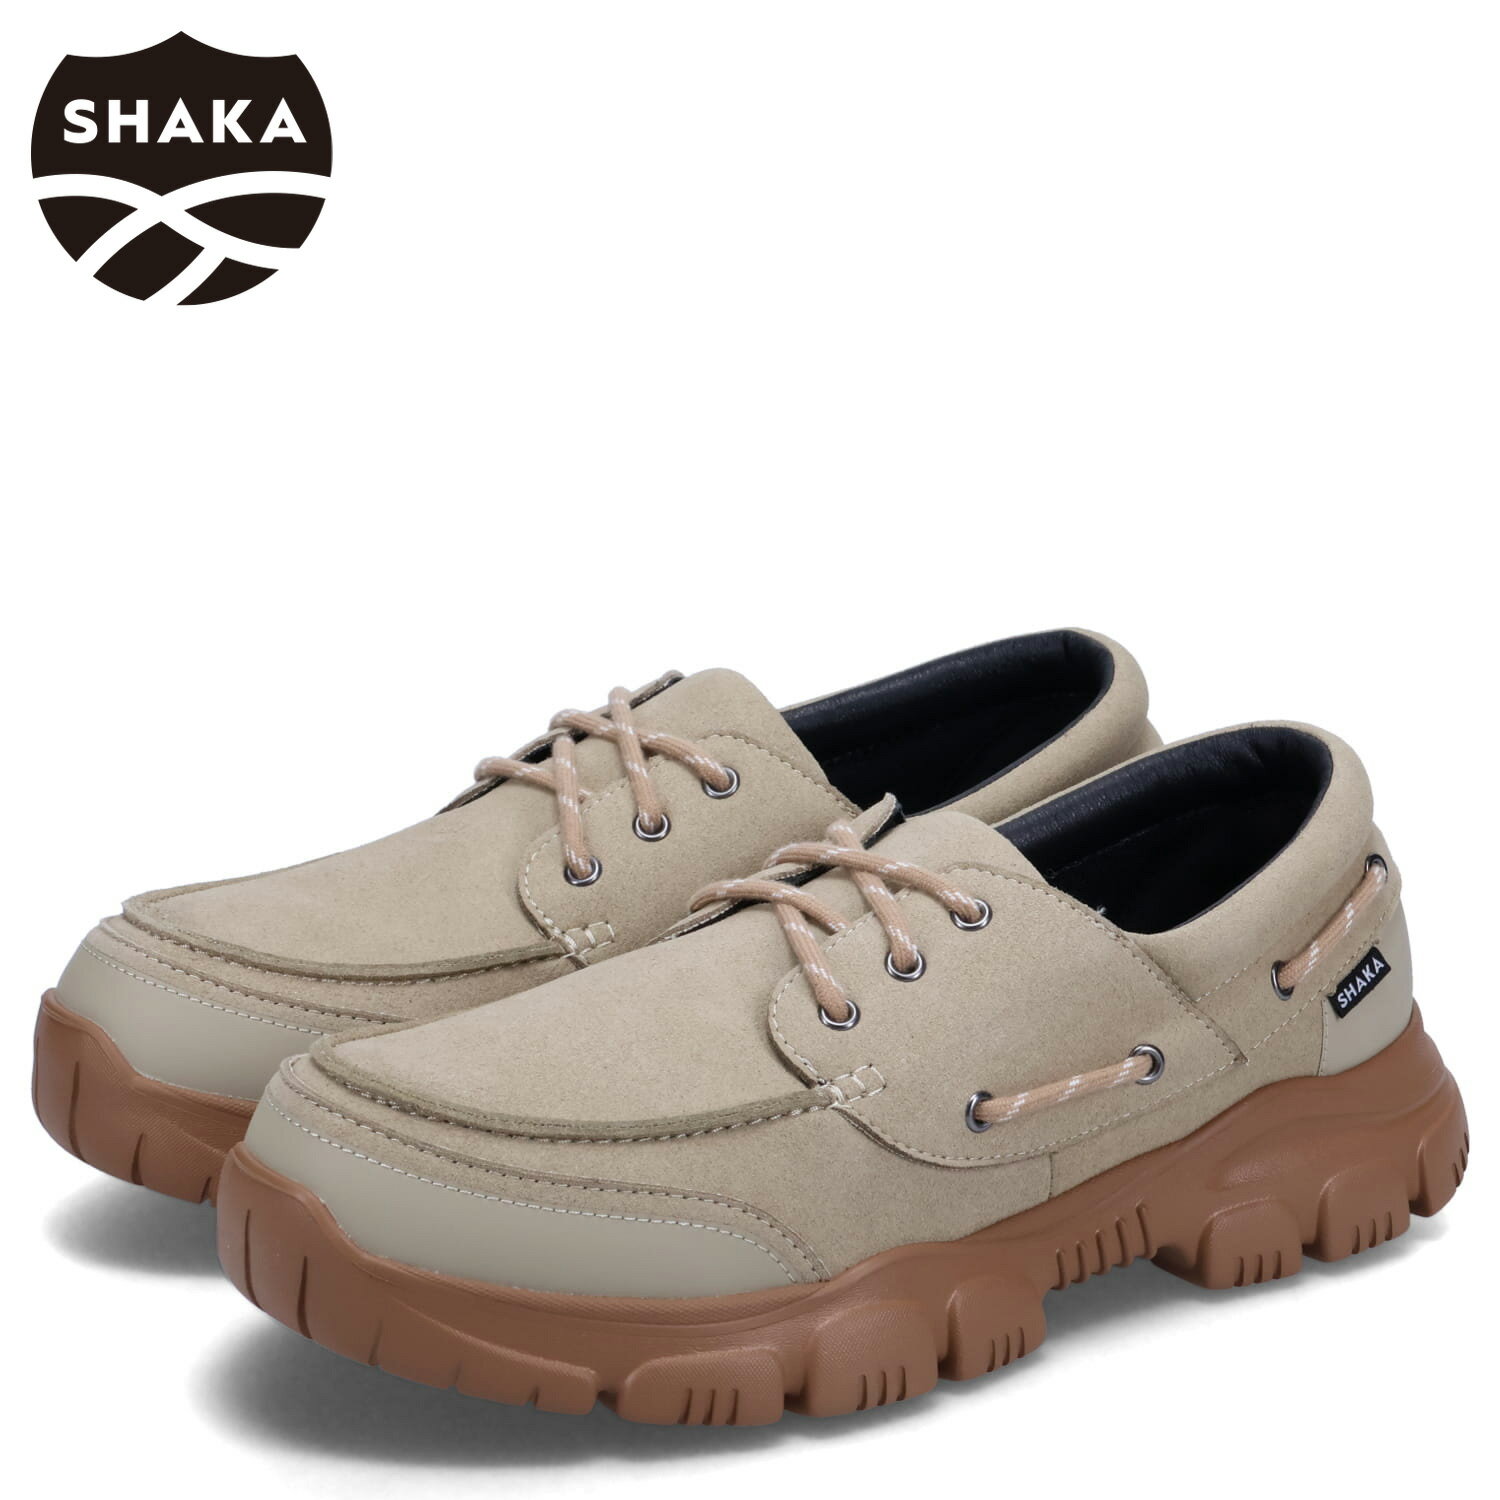 商品説明 【アフリカの伝統的な柄や色使いを取り入れたハイクオリティーで独創的なサンダル SHAKA】 クライミングロープ調の靴紐をデッキシューズ風に配し、人気の全地形対応型ATソールを組み合わせた、SHAKA(シャカ)初のシューレース仕様のシューズ「TREK CAMP MOC AT (トレック キャンプ モック AT)」。トラディショナルでベーシックかつトレンド感もあるモカシンシューズデザインのアッパーには、まるで本革のような風合いのスエード調マイクロファイバー素材を組み合わせて都会的なルックスに仕上げました。また、撥水加工の「3M Scotchgard (3M スコッチガード)」を施すことで晴れた日の街履きにはもちろん梅雨時期などの悪天候時にも高い実用性を誇ります。中敷き(インソール)には通気性、クッション性の高い「SHAKA IN-FOAM(シャカインフォーム)」を採用し快適な履き心地を実現。アウトソールには全地形対応でグリップ力、クッション性が高いALL-TERRAIN(オールテレーン/AT) SOLEを使用。軽量で衝撃吸収性に優れたEVA素材と耐久性とグリップ力を併せ持つラバー素材を掛け合わせたATソールは、普段のコンクリートもアウトドアフィールドでの地面でも歩きやすく快適で軽快な歩行をサポートしてくれます。スポーツサンダルを長年展開してきたSHAKAならではのノウハウが込められてたファッション性と実用性を併せ持つシューズに仕上がっています。 ブランド名 / 商品名 SHAKA シャカ / TREK CAMP MOC AT SK-257 カラー SAND 素材 / 仕様 アッパー：合成繊維 ソール：合成底 生産国 CHINA ご購入前に必ずお読みください 靴のサイズ・仕様について 基本的にはブランドが定めているサイズ、または箱に記載されているサイズをもとに記載しております。(サイズの単位はcmになります。) 外装箱や商品に若干のへたりや傷がある場合があります。 また、生産工場や生産時期で細かい仕様変更がある場合があり、サイズ・素材・カラー・外装箱・タグ等が商品画像と差異がある場合がありますのでご注意ください。 カラーについて 個体ごとに若干の差異がある場合がございます。可能な限り現物に近い色味の写真を掲載をしておりますが、お客様のモニターの設定などにより現物との色味に差異が生じる場合もございます。あらかじめご了承ください。 予約商品の納期発送目安について 予約商品の納期発送目安は、以下の通りになります。 上旬：1日-10日頃発送予定 中旬：11日-20日頃発送予定 下旬：21日-末日頃発送予定 ※目安になりますので、日程が多少前後する場合があります。 類似商品はこちらSHAKA TREK CAMP MOC AT 15,400円SHAKA TREK CAMP MOC AT 13,860円SHAKA TREK CAMP MOC AT 15,400円SHAKA TREK SLIP ON MOC 14,960円SHAKA TREK SLIP ON MOC 13,464円SHAKA TREK SLIP ON MOC 14,960円SHAKA TREK SLIP ON MOC 13,464円SHAKA TREK SLIP ON MOC 13,464円SHAKA TREK SLIP ON MOC 14,960円新着商品はこちら2024/5/295050WORKSHOP CUSTOMIZIN4,257円2024/5/295050WORKSHOP CUSTOMIZIN6,831円2024/5/28SHAKA HIKE PURSE EX シャカ18,810円再販商品はこちら2024/5/29OOFOS OOAHH LUXE ウーフォス 9,680円2024/5/29GUCCI SUNGLASSES グッチ サン25,065円2024/5/29A.P.C. JOSH COIN CASE ア26,100円2024/05/30 更新 類似商品はこちらSHAKA TREK CAMP MOC AT 15,400円SHAKA TREK CAMP MOC AT 13,860円SHAKA TREK CAMP MOC AT 15,400円新着商品はこちら2024/5/295050WORKSHOP CUSTOMIZIN4,257円2024/5/295050WORKSHOP CUSTOMIZIN6,831円2024/5/28SHAKA HIKE PURSE EX シャカ18,810円再販商品はこちら2024/5/29OOFOS OOAHH LUXE ウーフォス 9,680円2024/5/29GUCCI SUNGLASSES グッチ サン25,065円2024/5/29A.P.C. JOSH COIN CASE ア26,100円